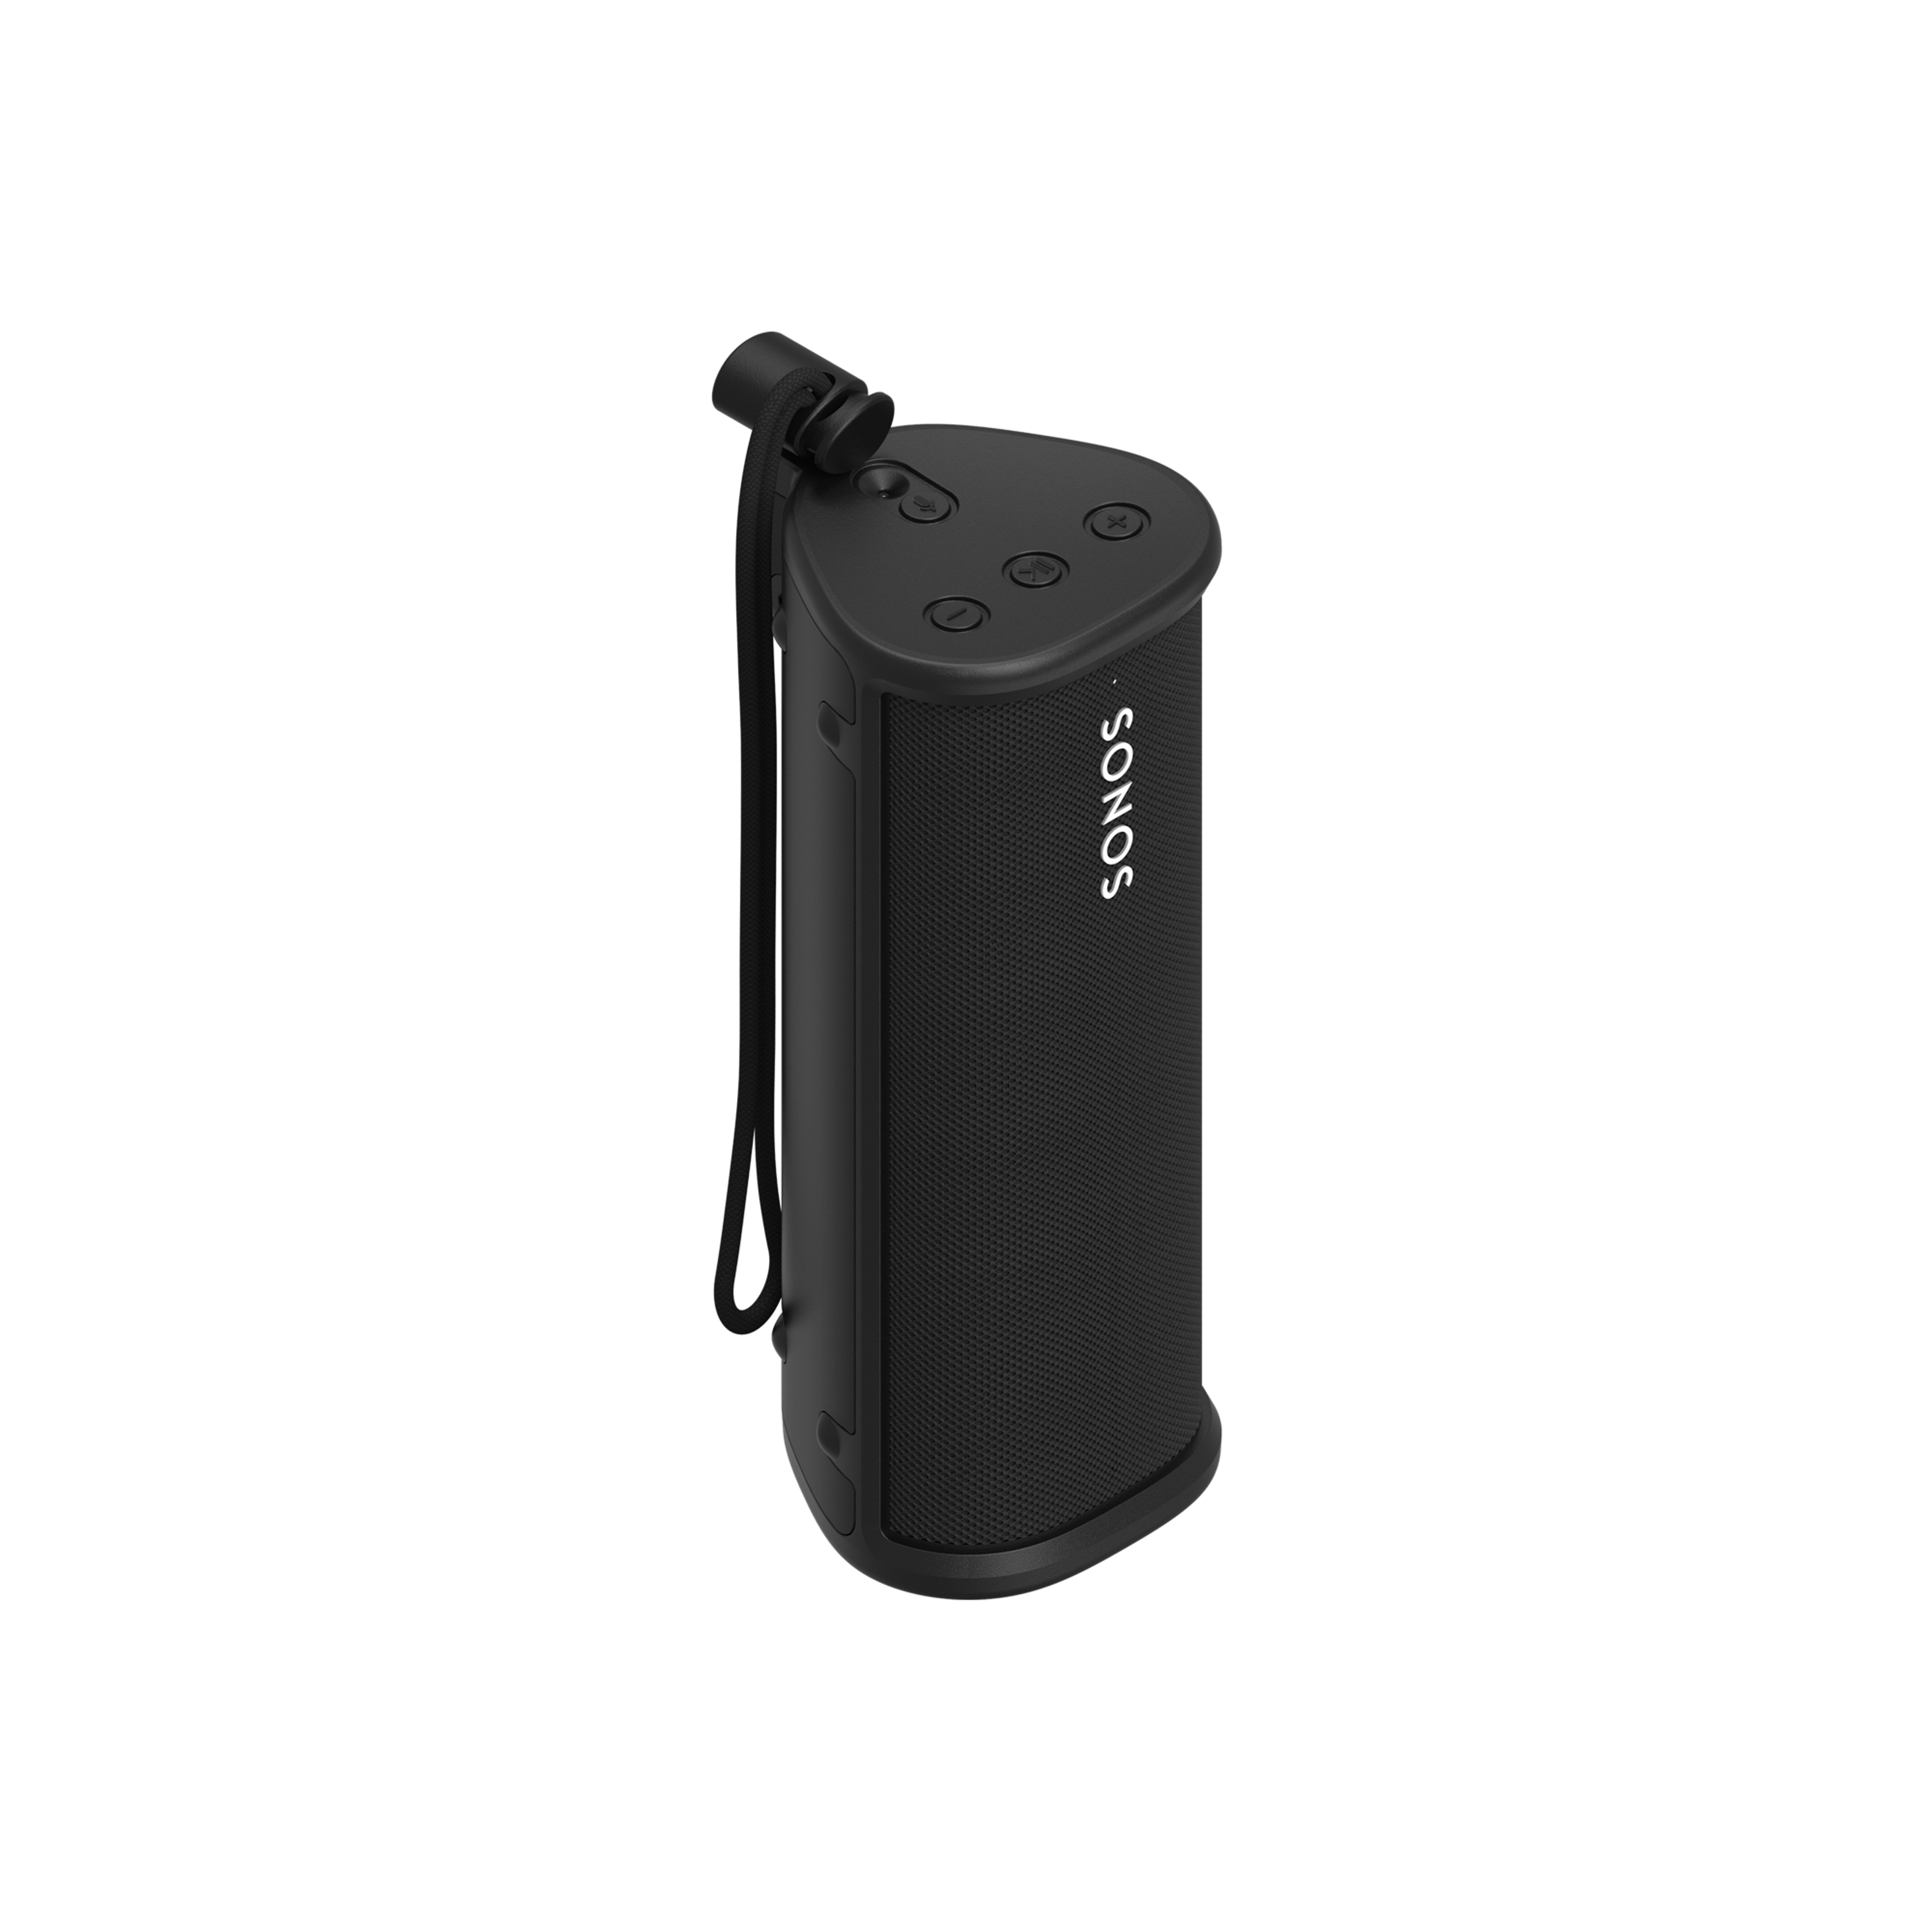 Immagine di una custodia OtterBox per Sonos Roam nera con Sonos Roam nero